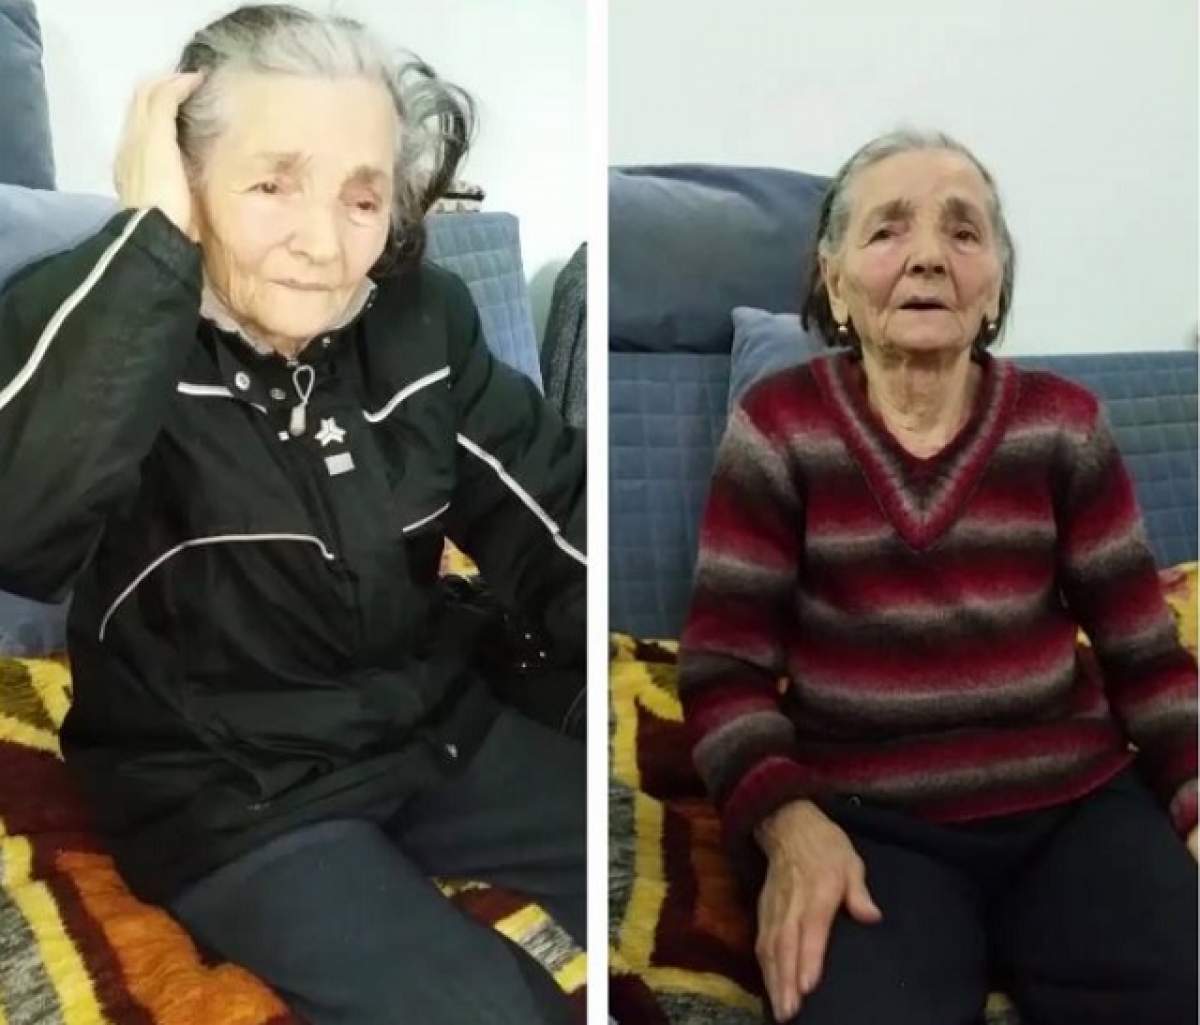 VIDEO / Lanţurile bătrâneţii! O femeie de 88 de ani, terorizată de propriul copil: "Mi-a dat cu sticla în cap"